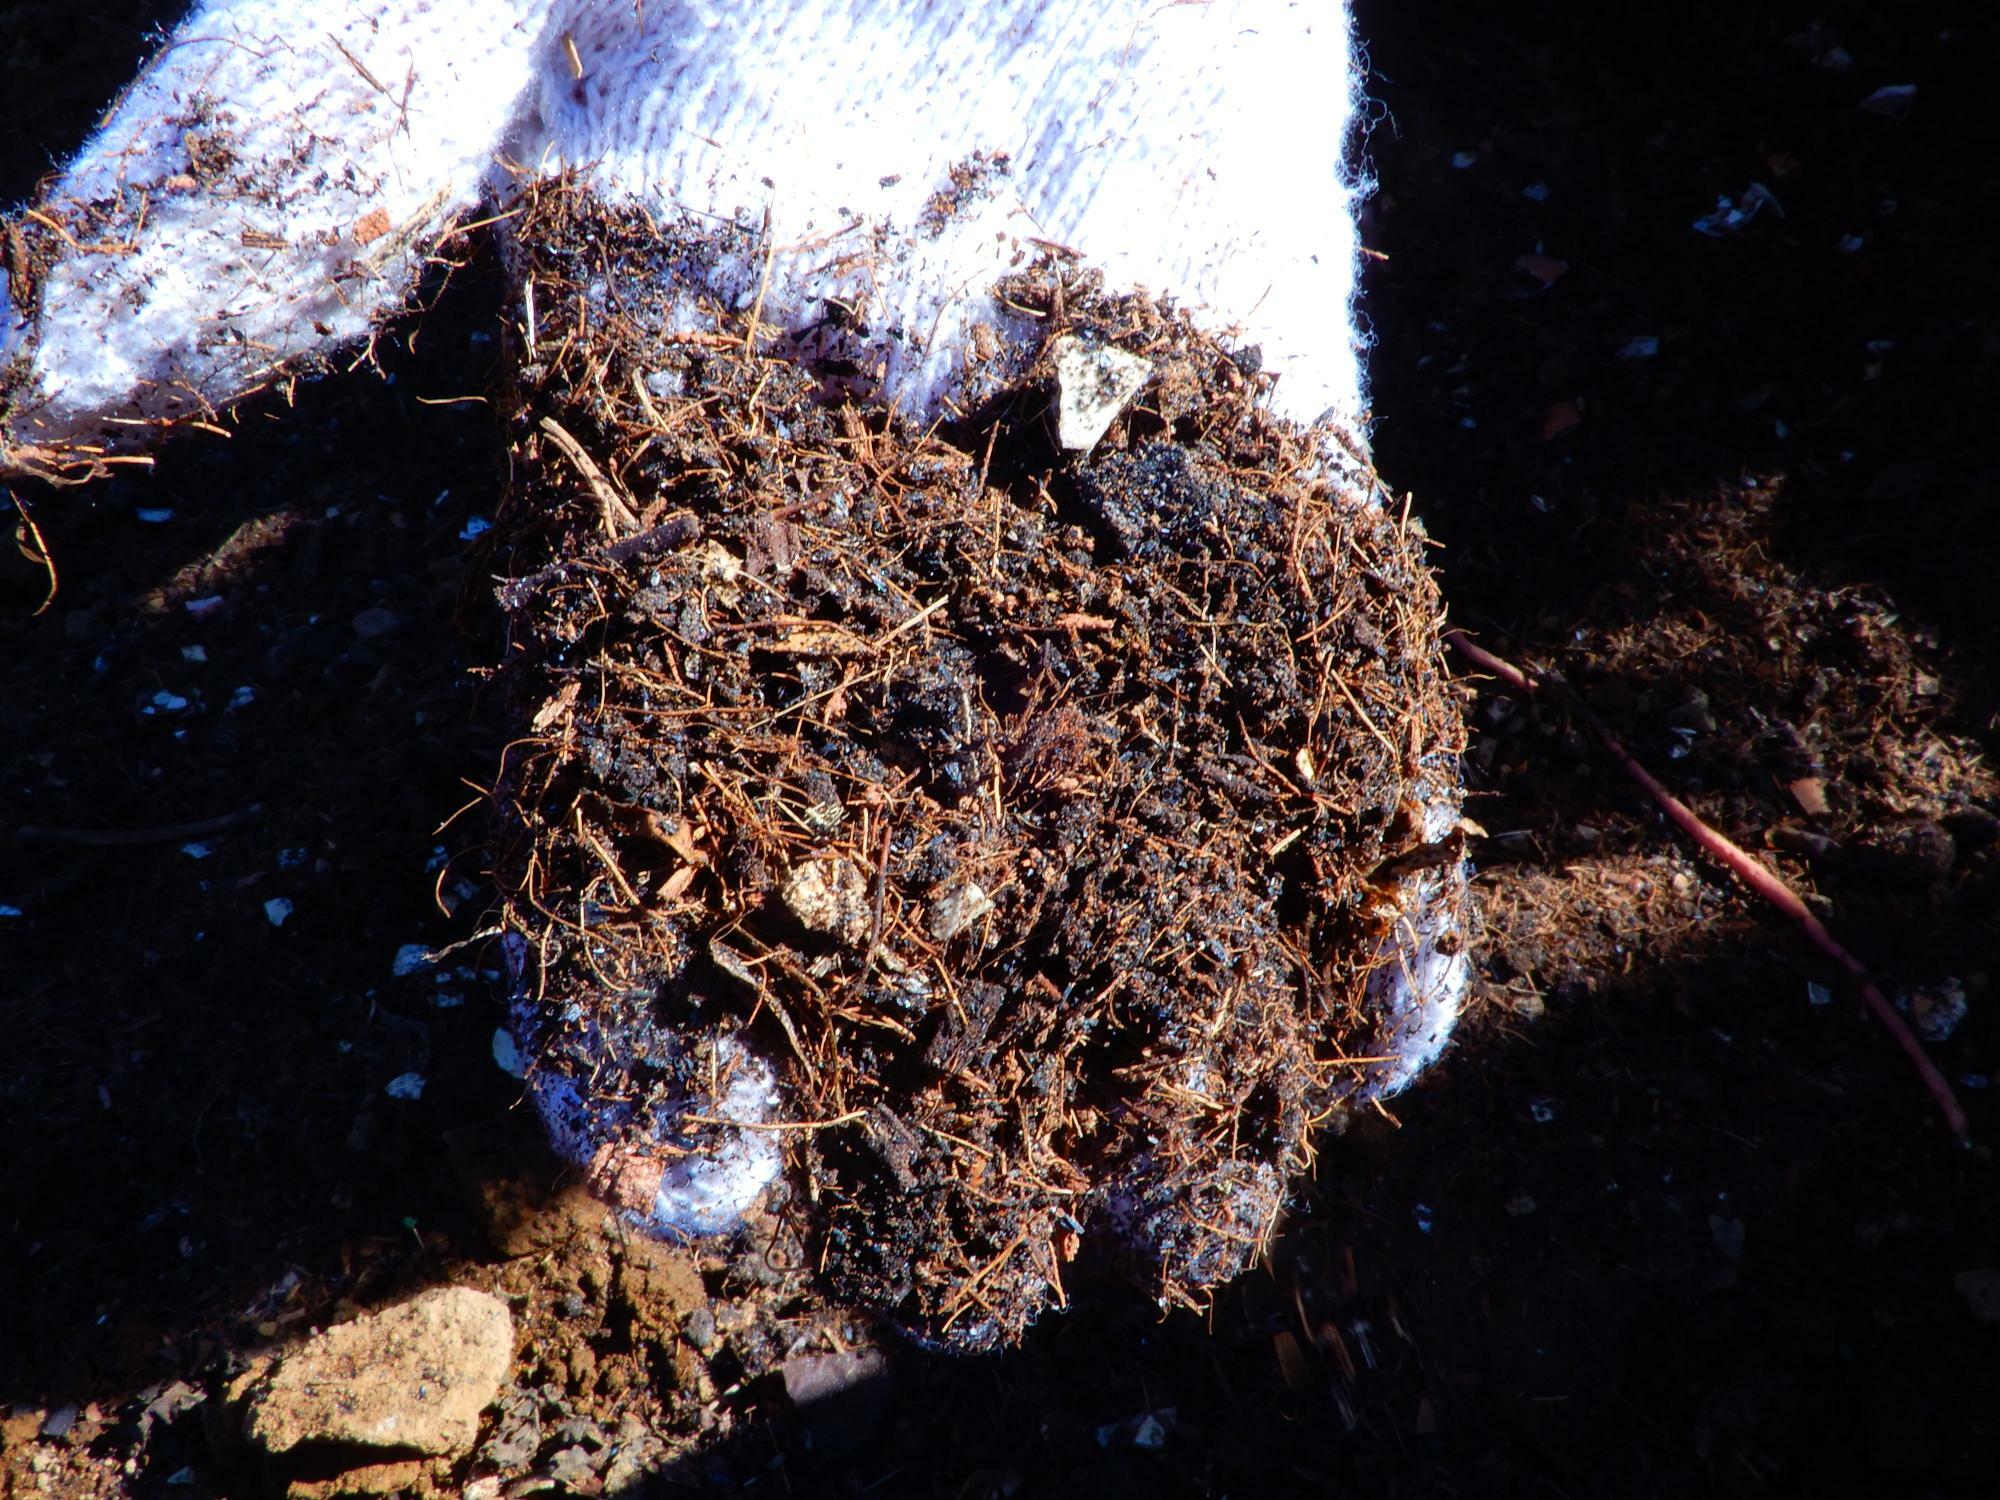 生ごみがこんなたい肥になるなんて。自然の菌や発酵の力の素晴らしさを感じました